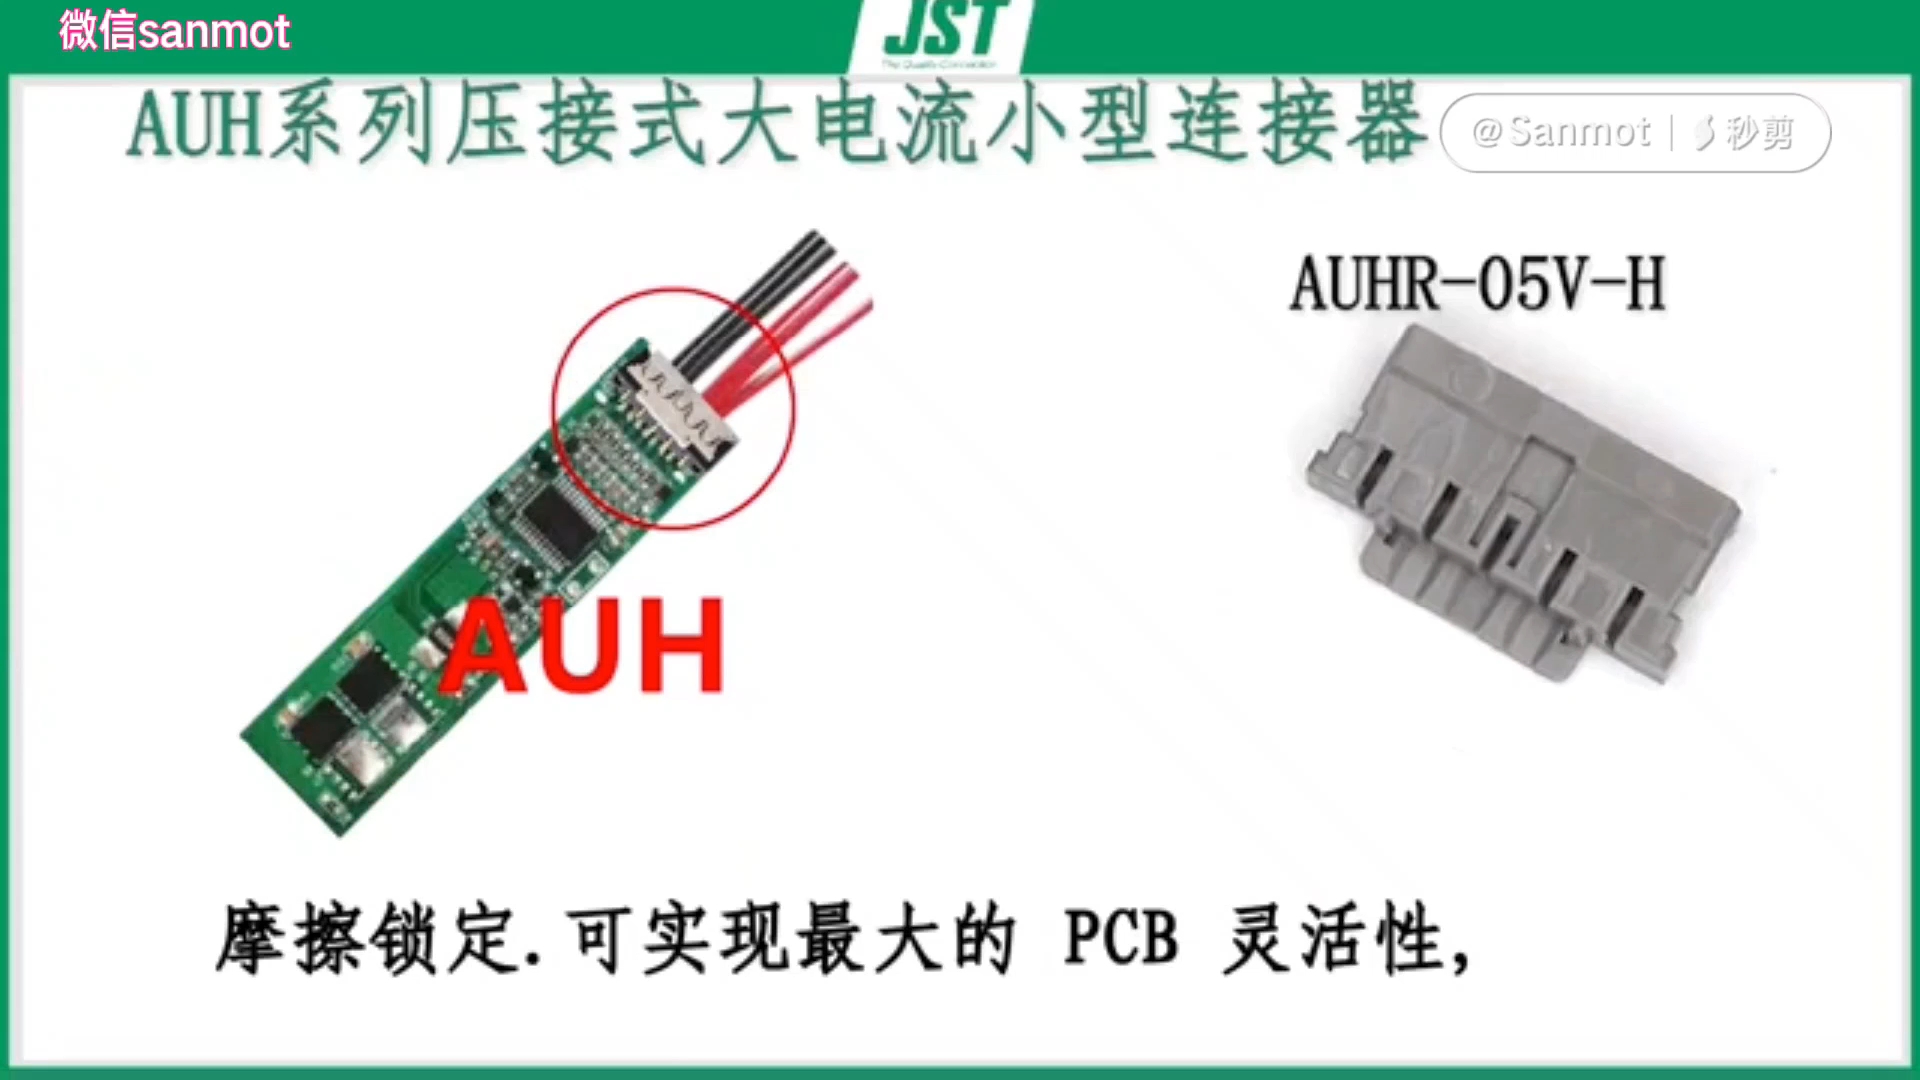 AUH系列是電源和信號混合線對板連接器,具有超小尺寸 6A電流,多組合的多功能連接器.#連接器 